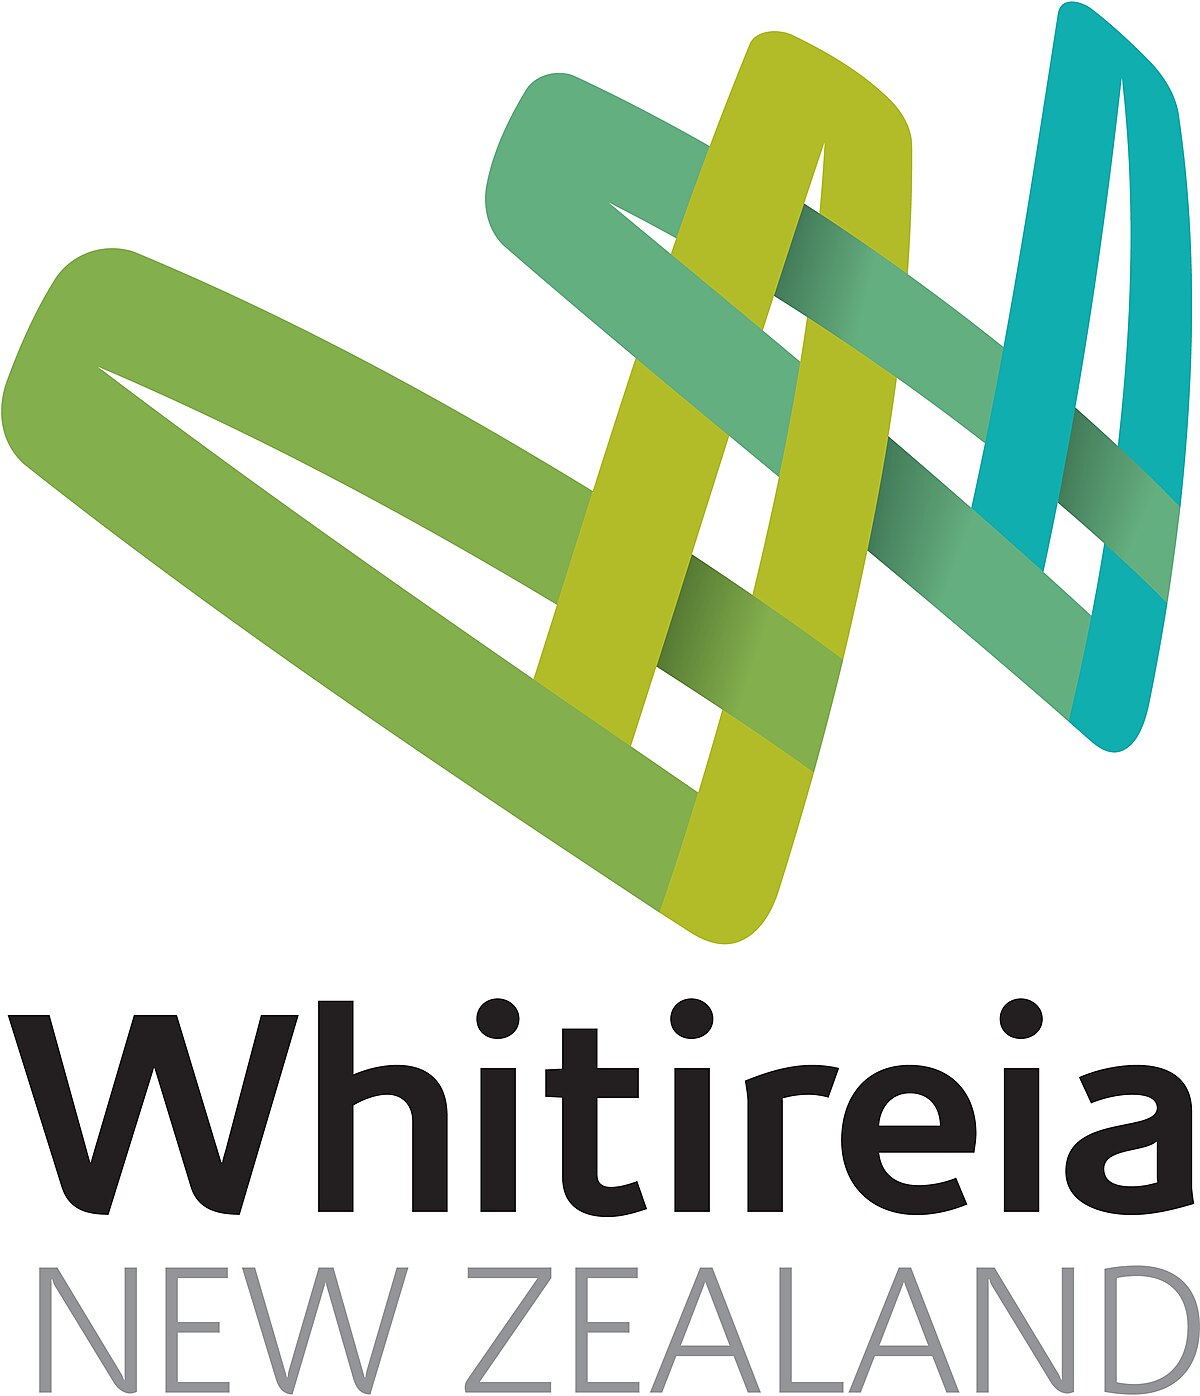 Whitireia New Zealand New Zealand